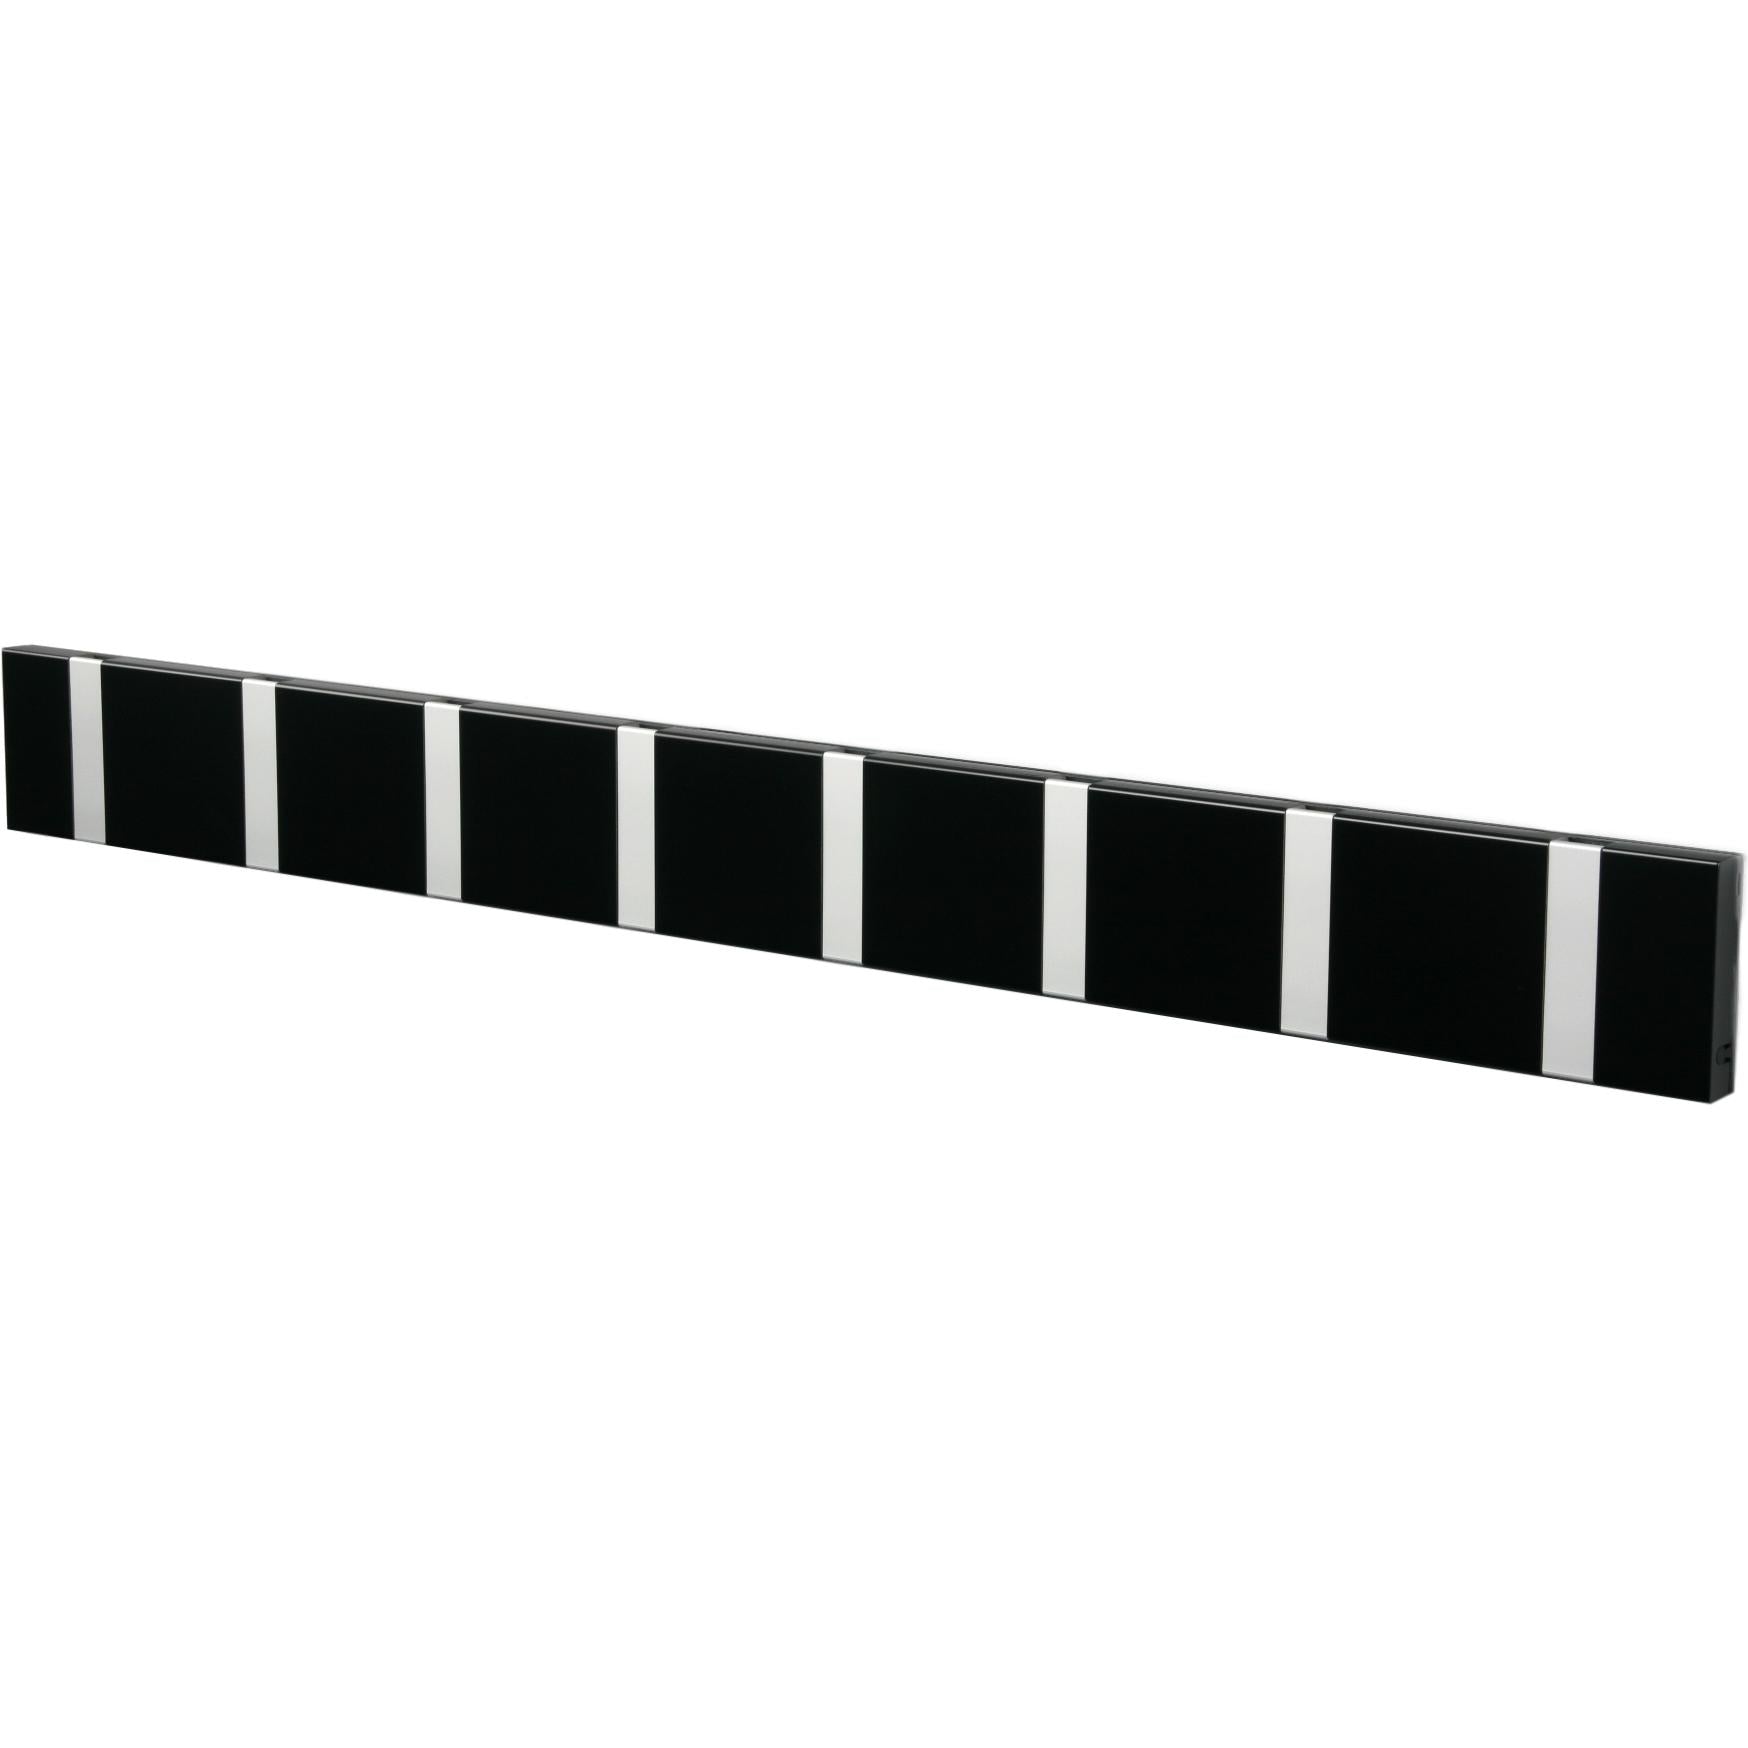 Loca Knax horizontaler Kleiderregal 8 Haken, schwarz/grau